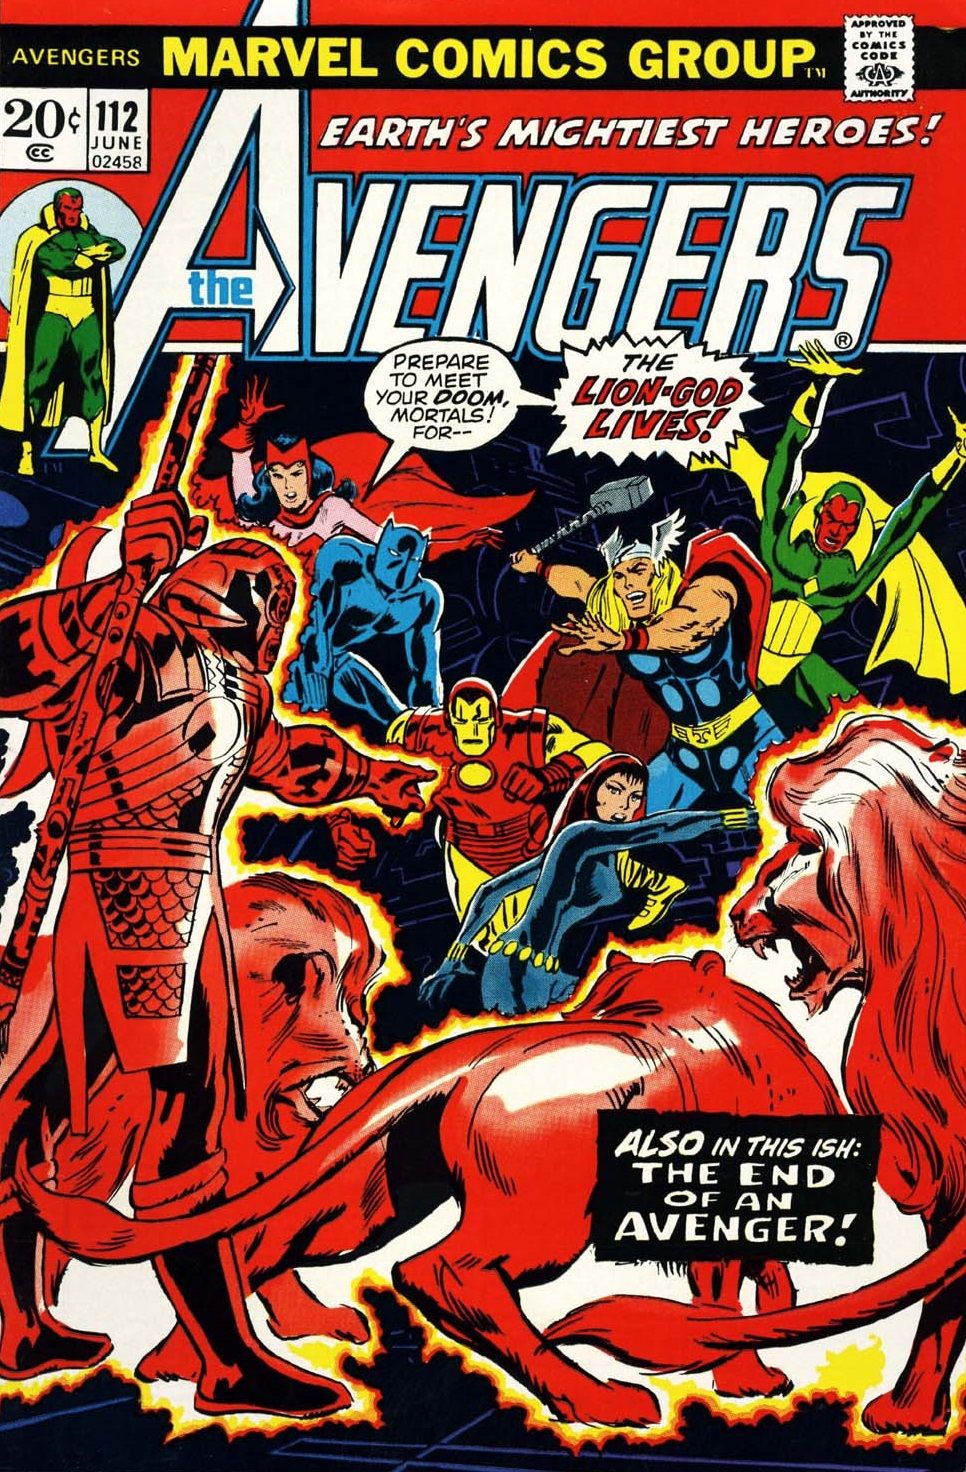 El Vengador se convirtió en una figura estándar en las portadas de Los Vengadores.